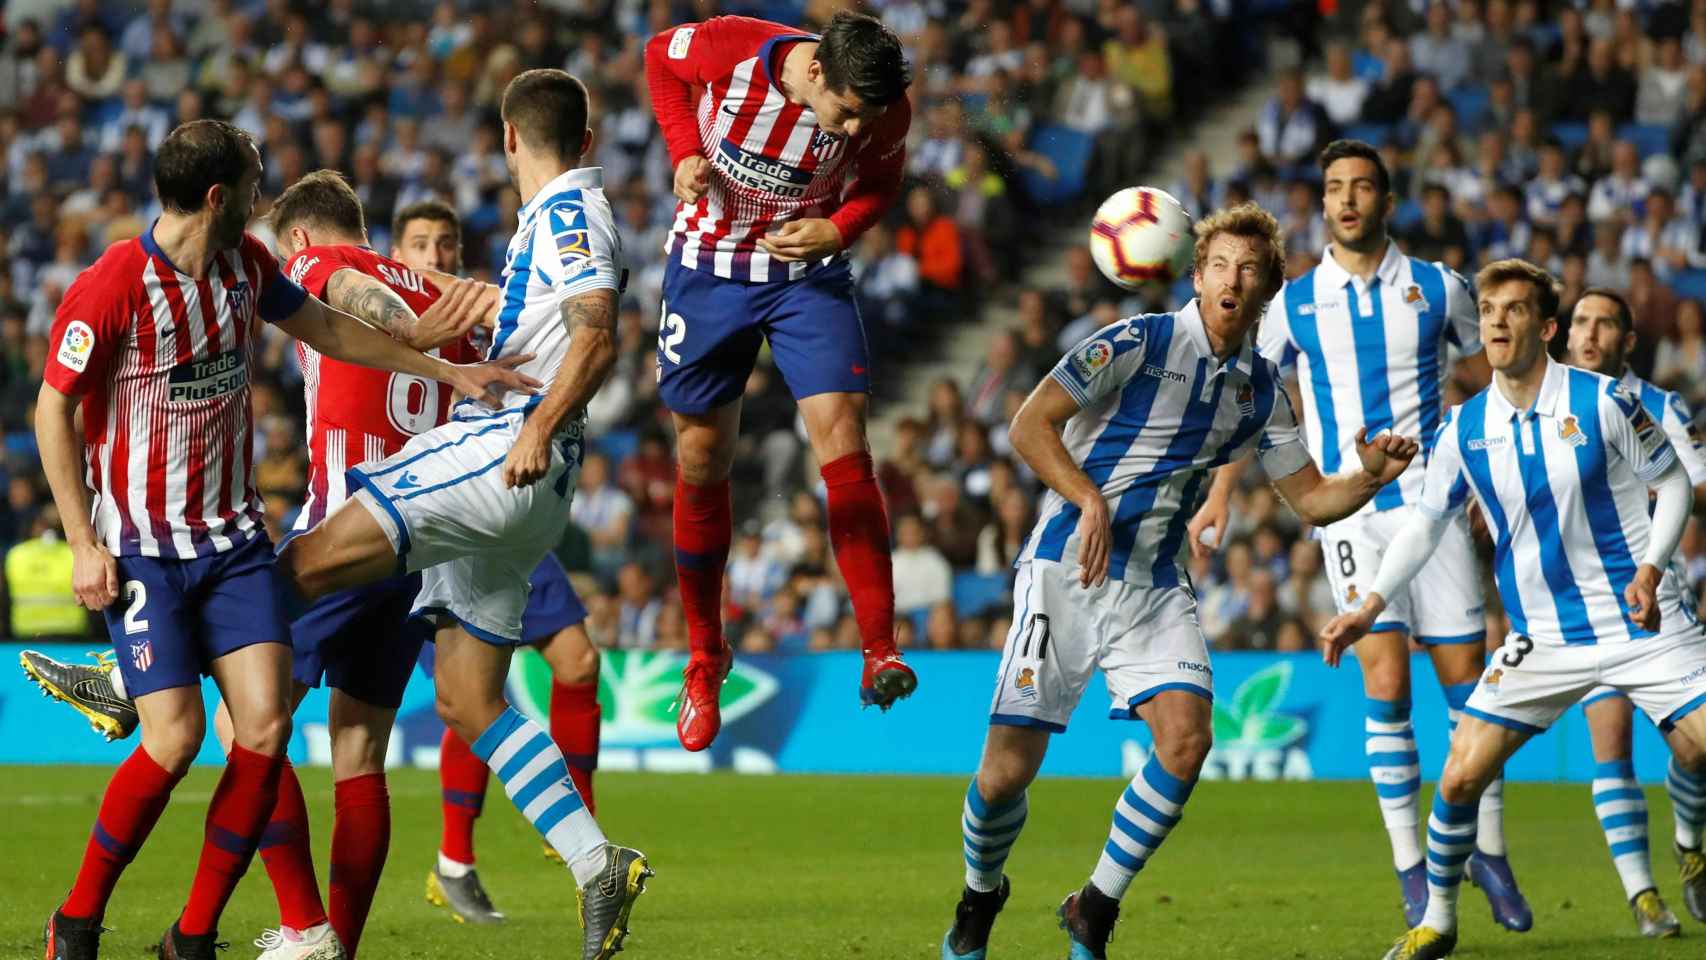 Morata remata un centro para marcar su segundo gol en el Real Sociedad - Atlético de Madrid de La Liga